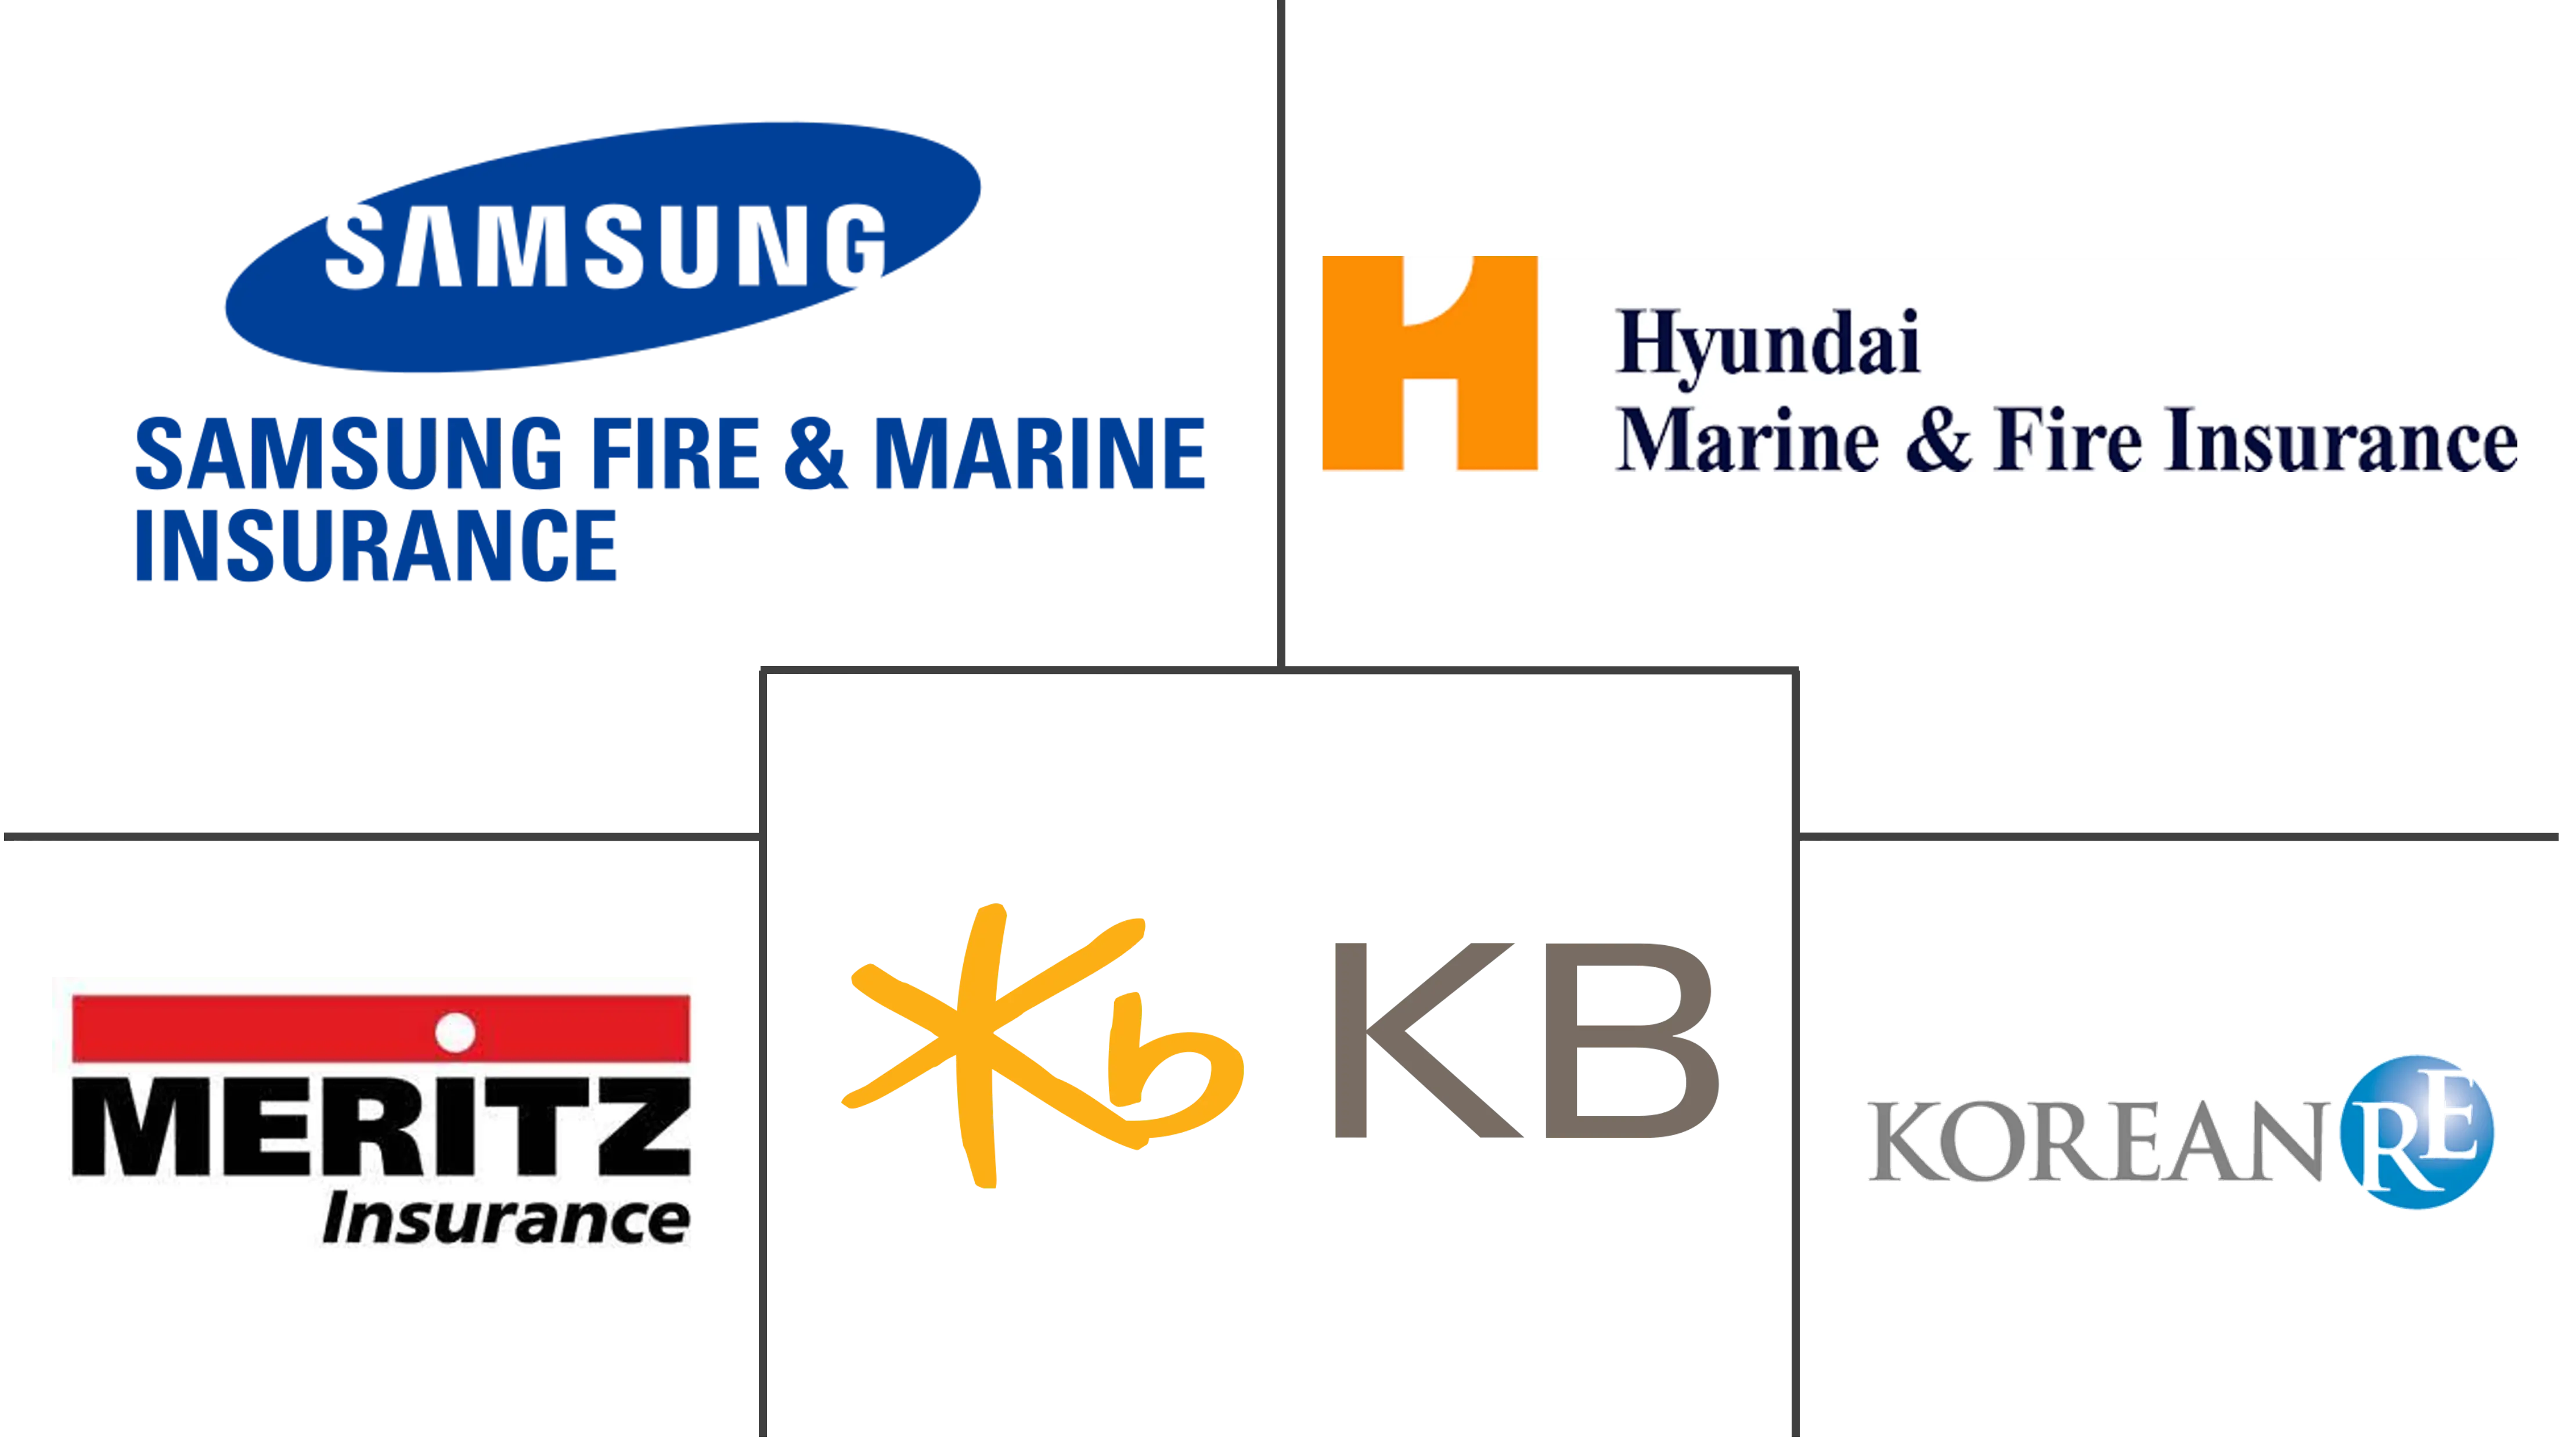 Principais participantes do mercado de seguros automóveis da Coreia do Sul